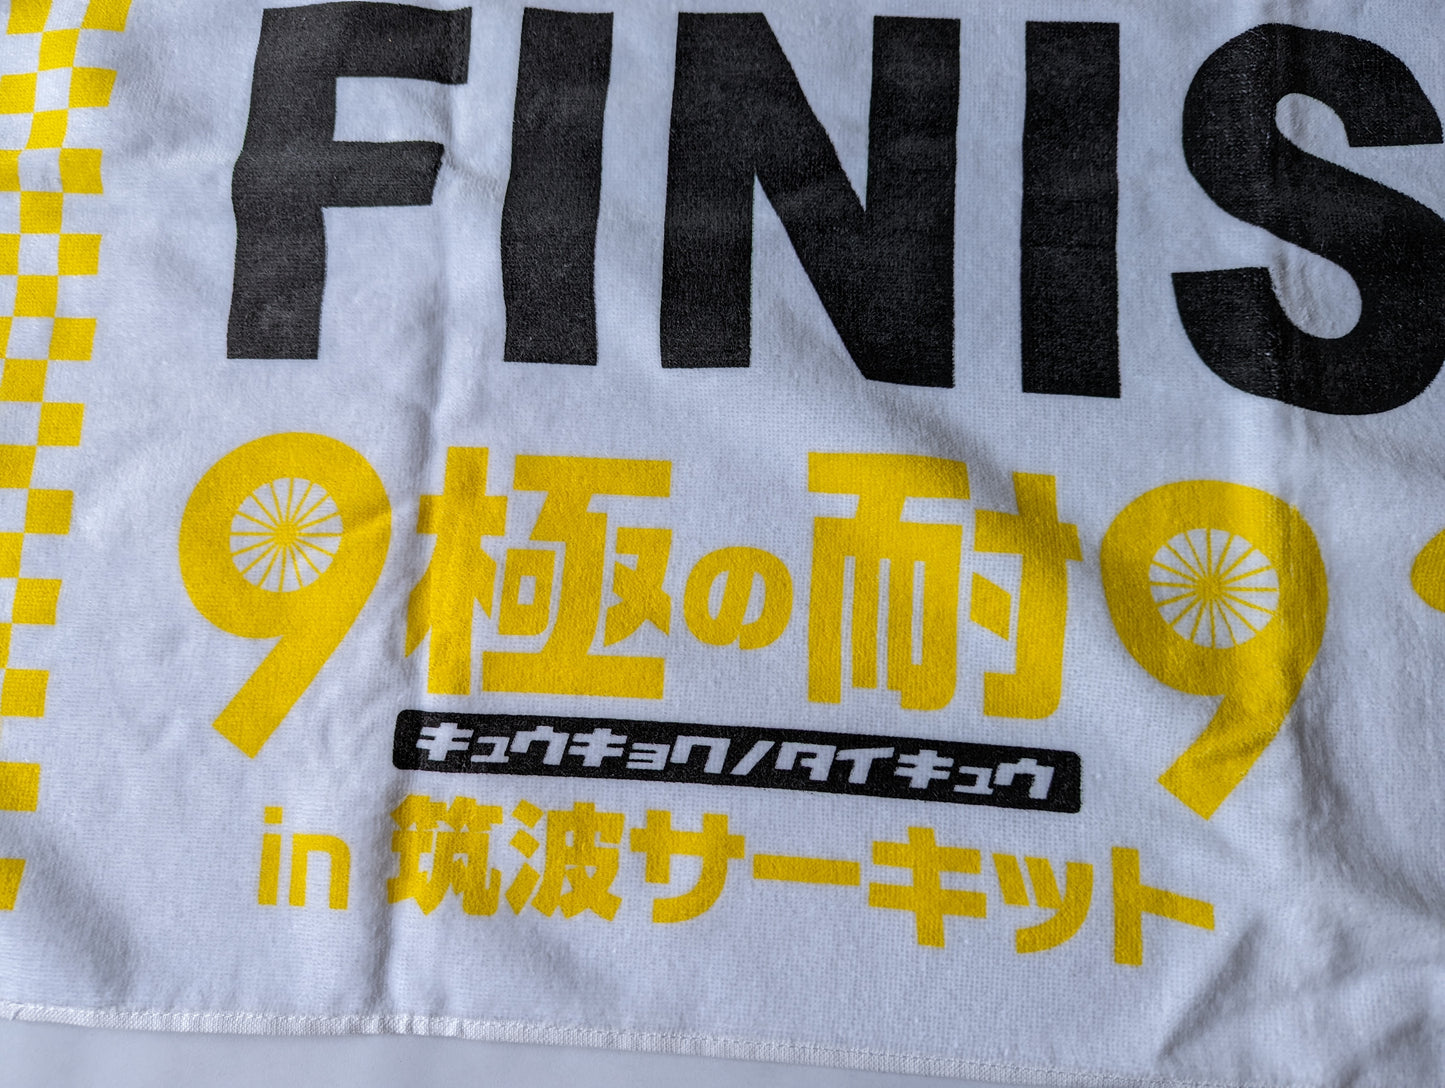 Tsukuba Circuit Race Finisher Towel